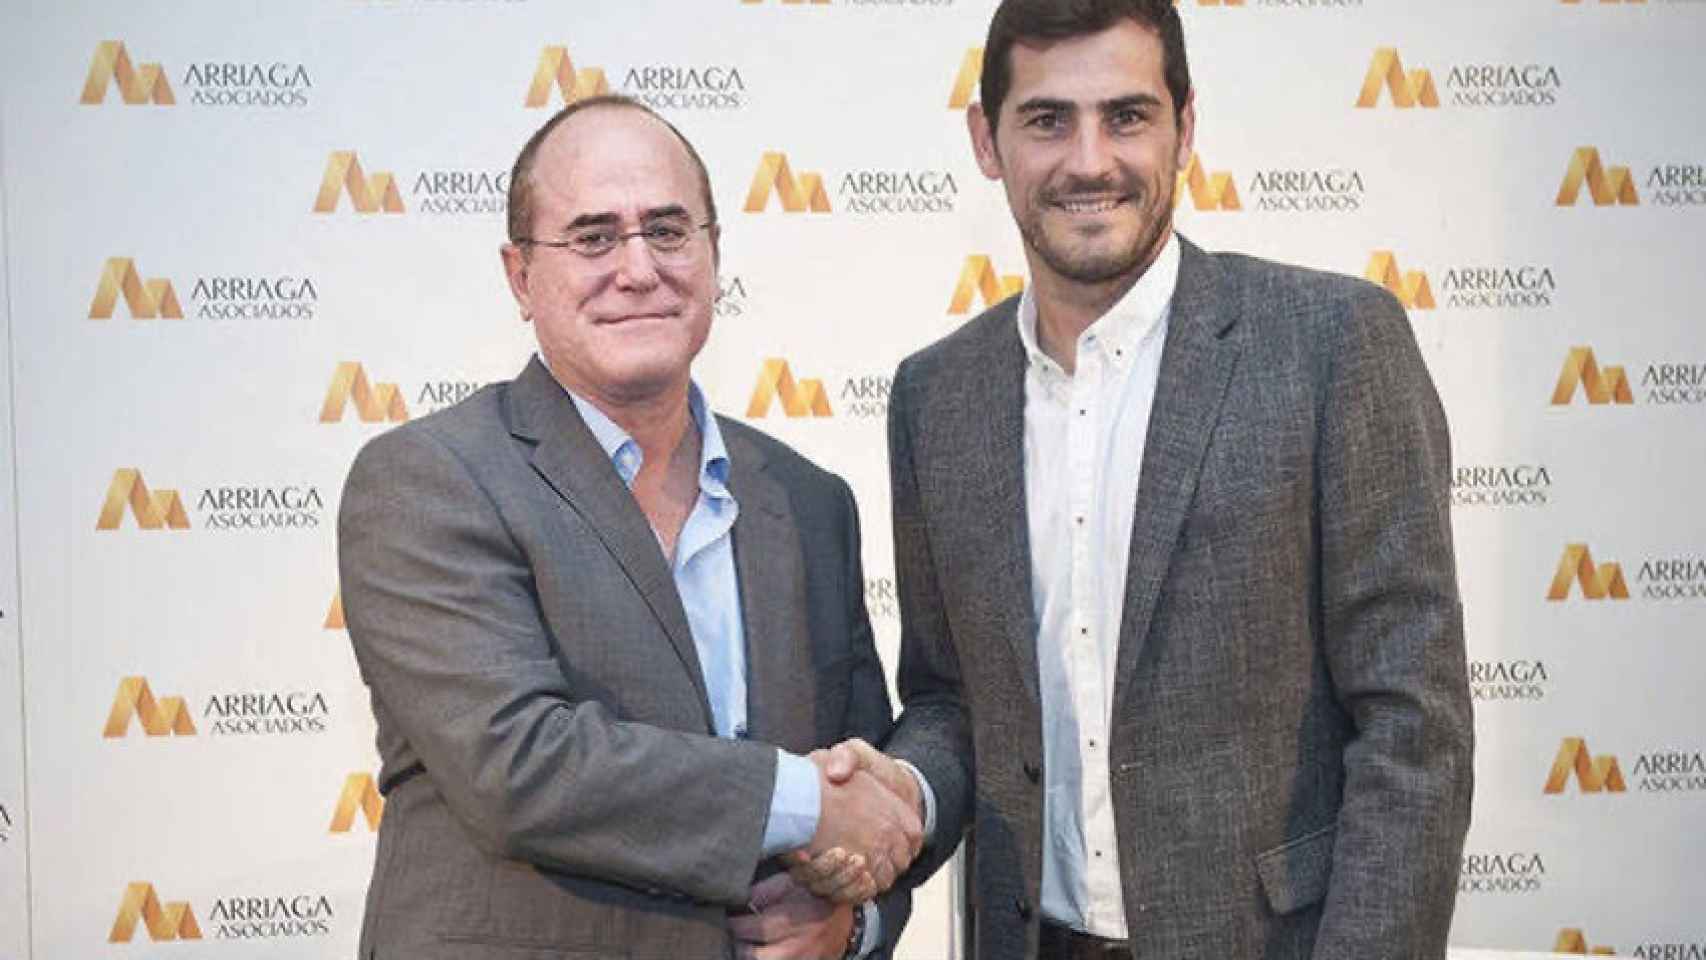 Arriaga Asociados, el bufete que tiene a Iker Casillas como reclamo publicitario